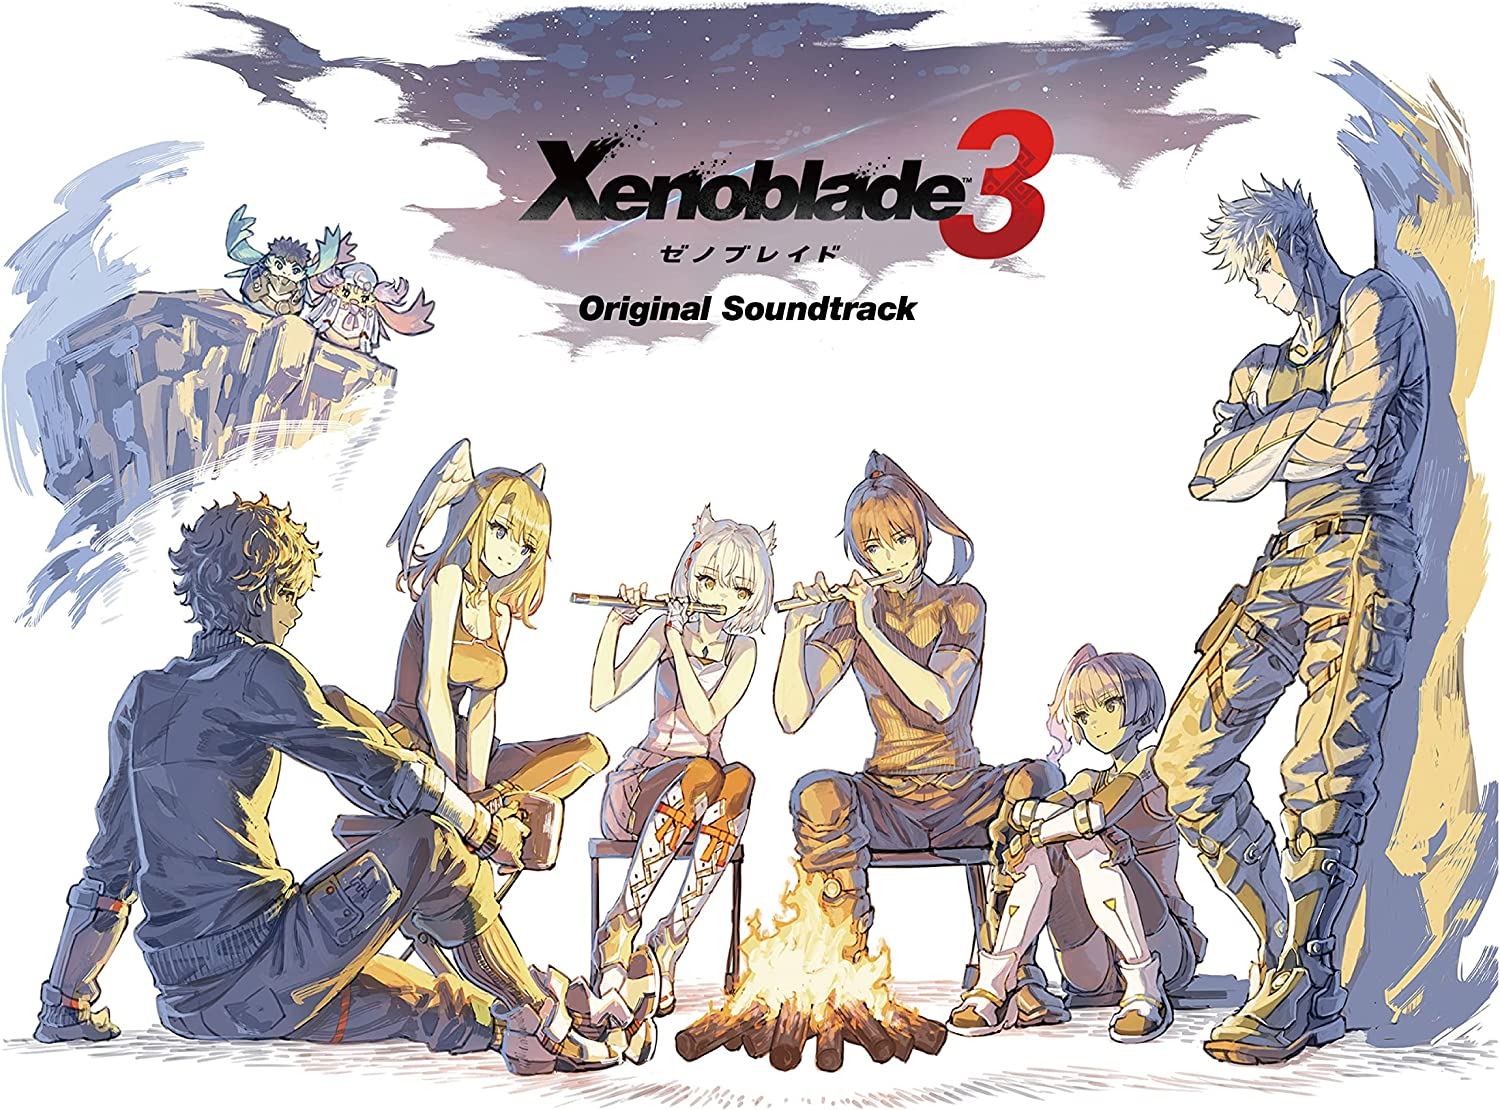 Xenoblade Chronicles 3 mas Xenoblade Chronicles 3 Expansion Pass